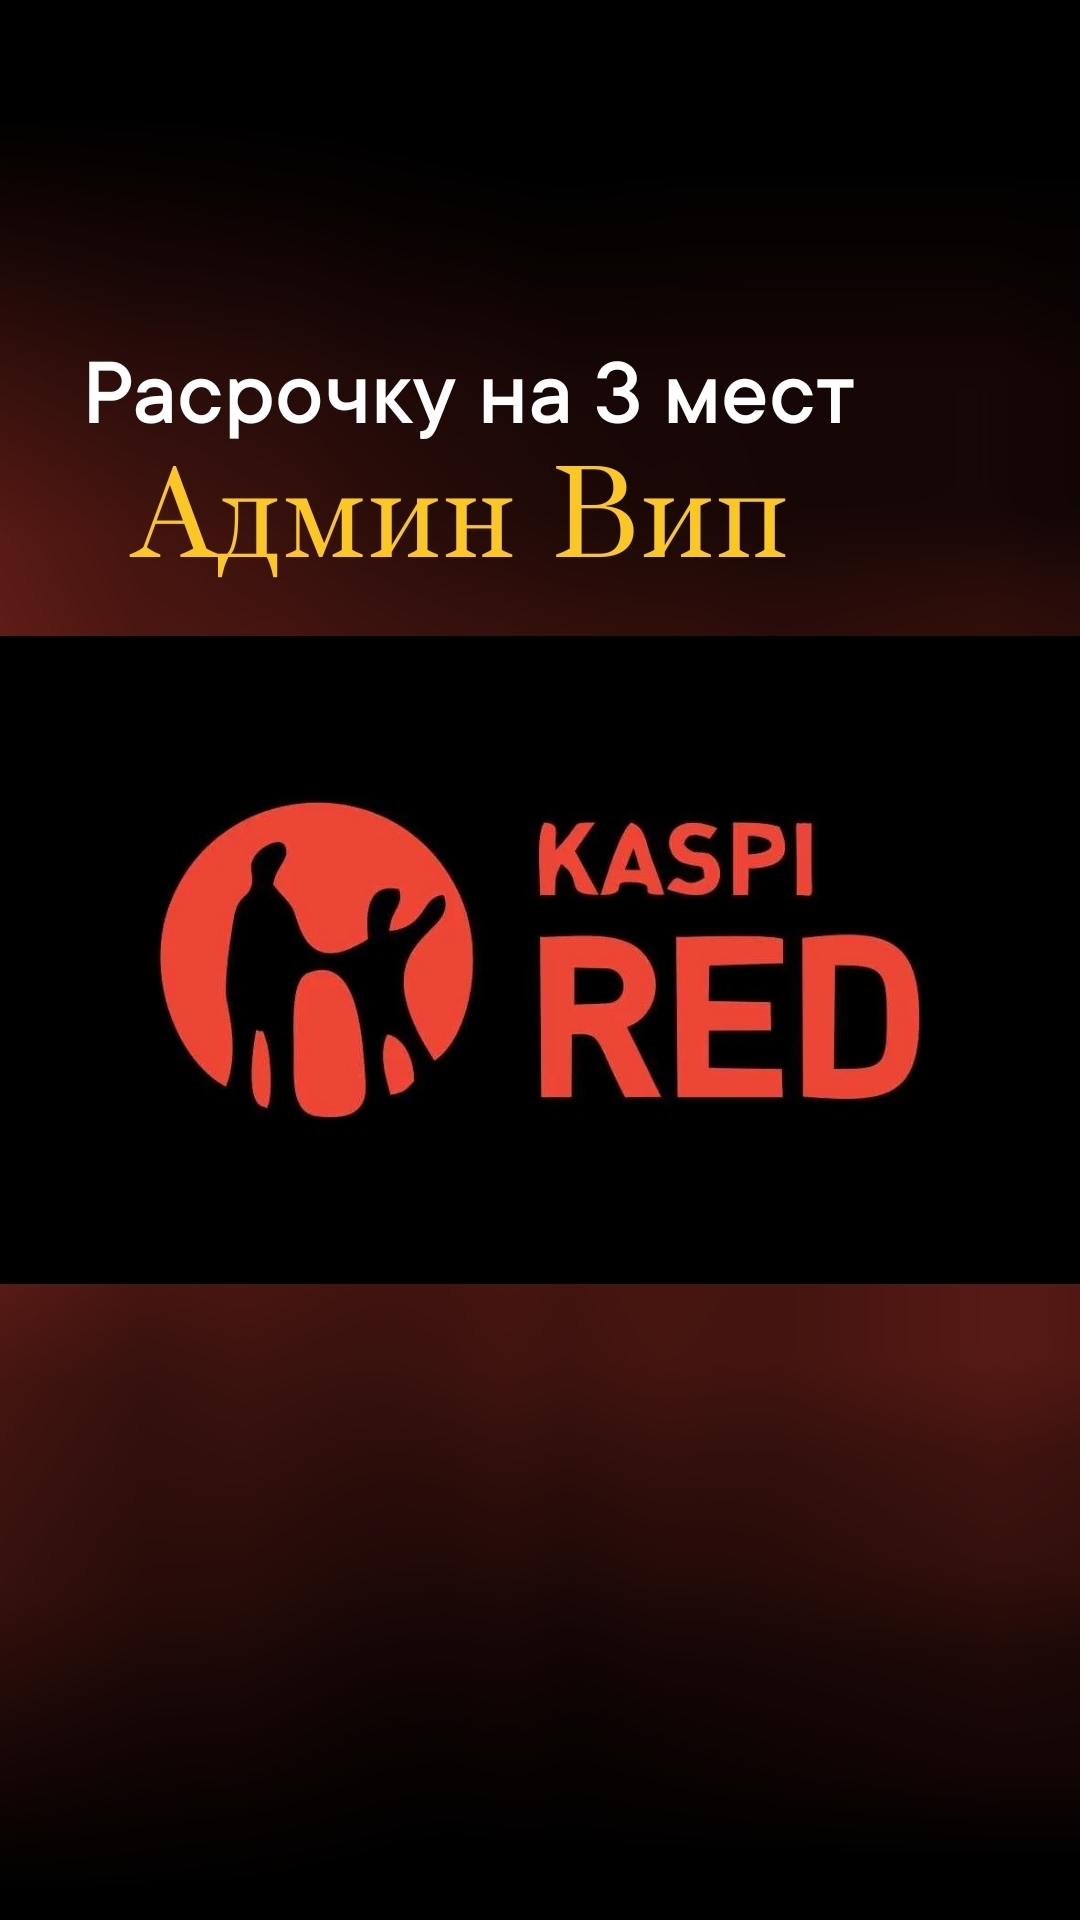 Купить привилегию в Pассрочку KASPI RED